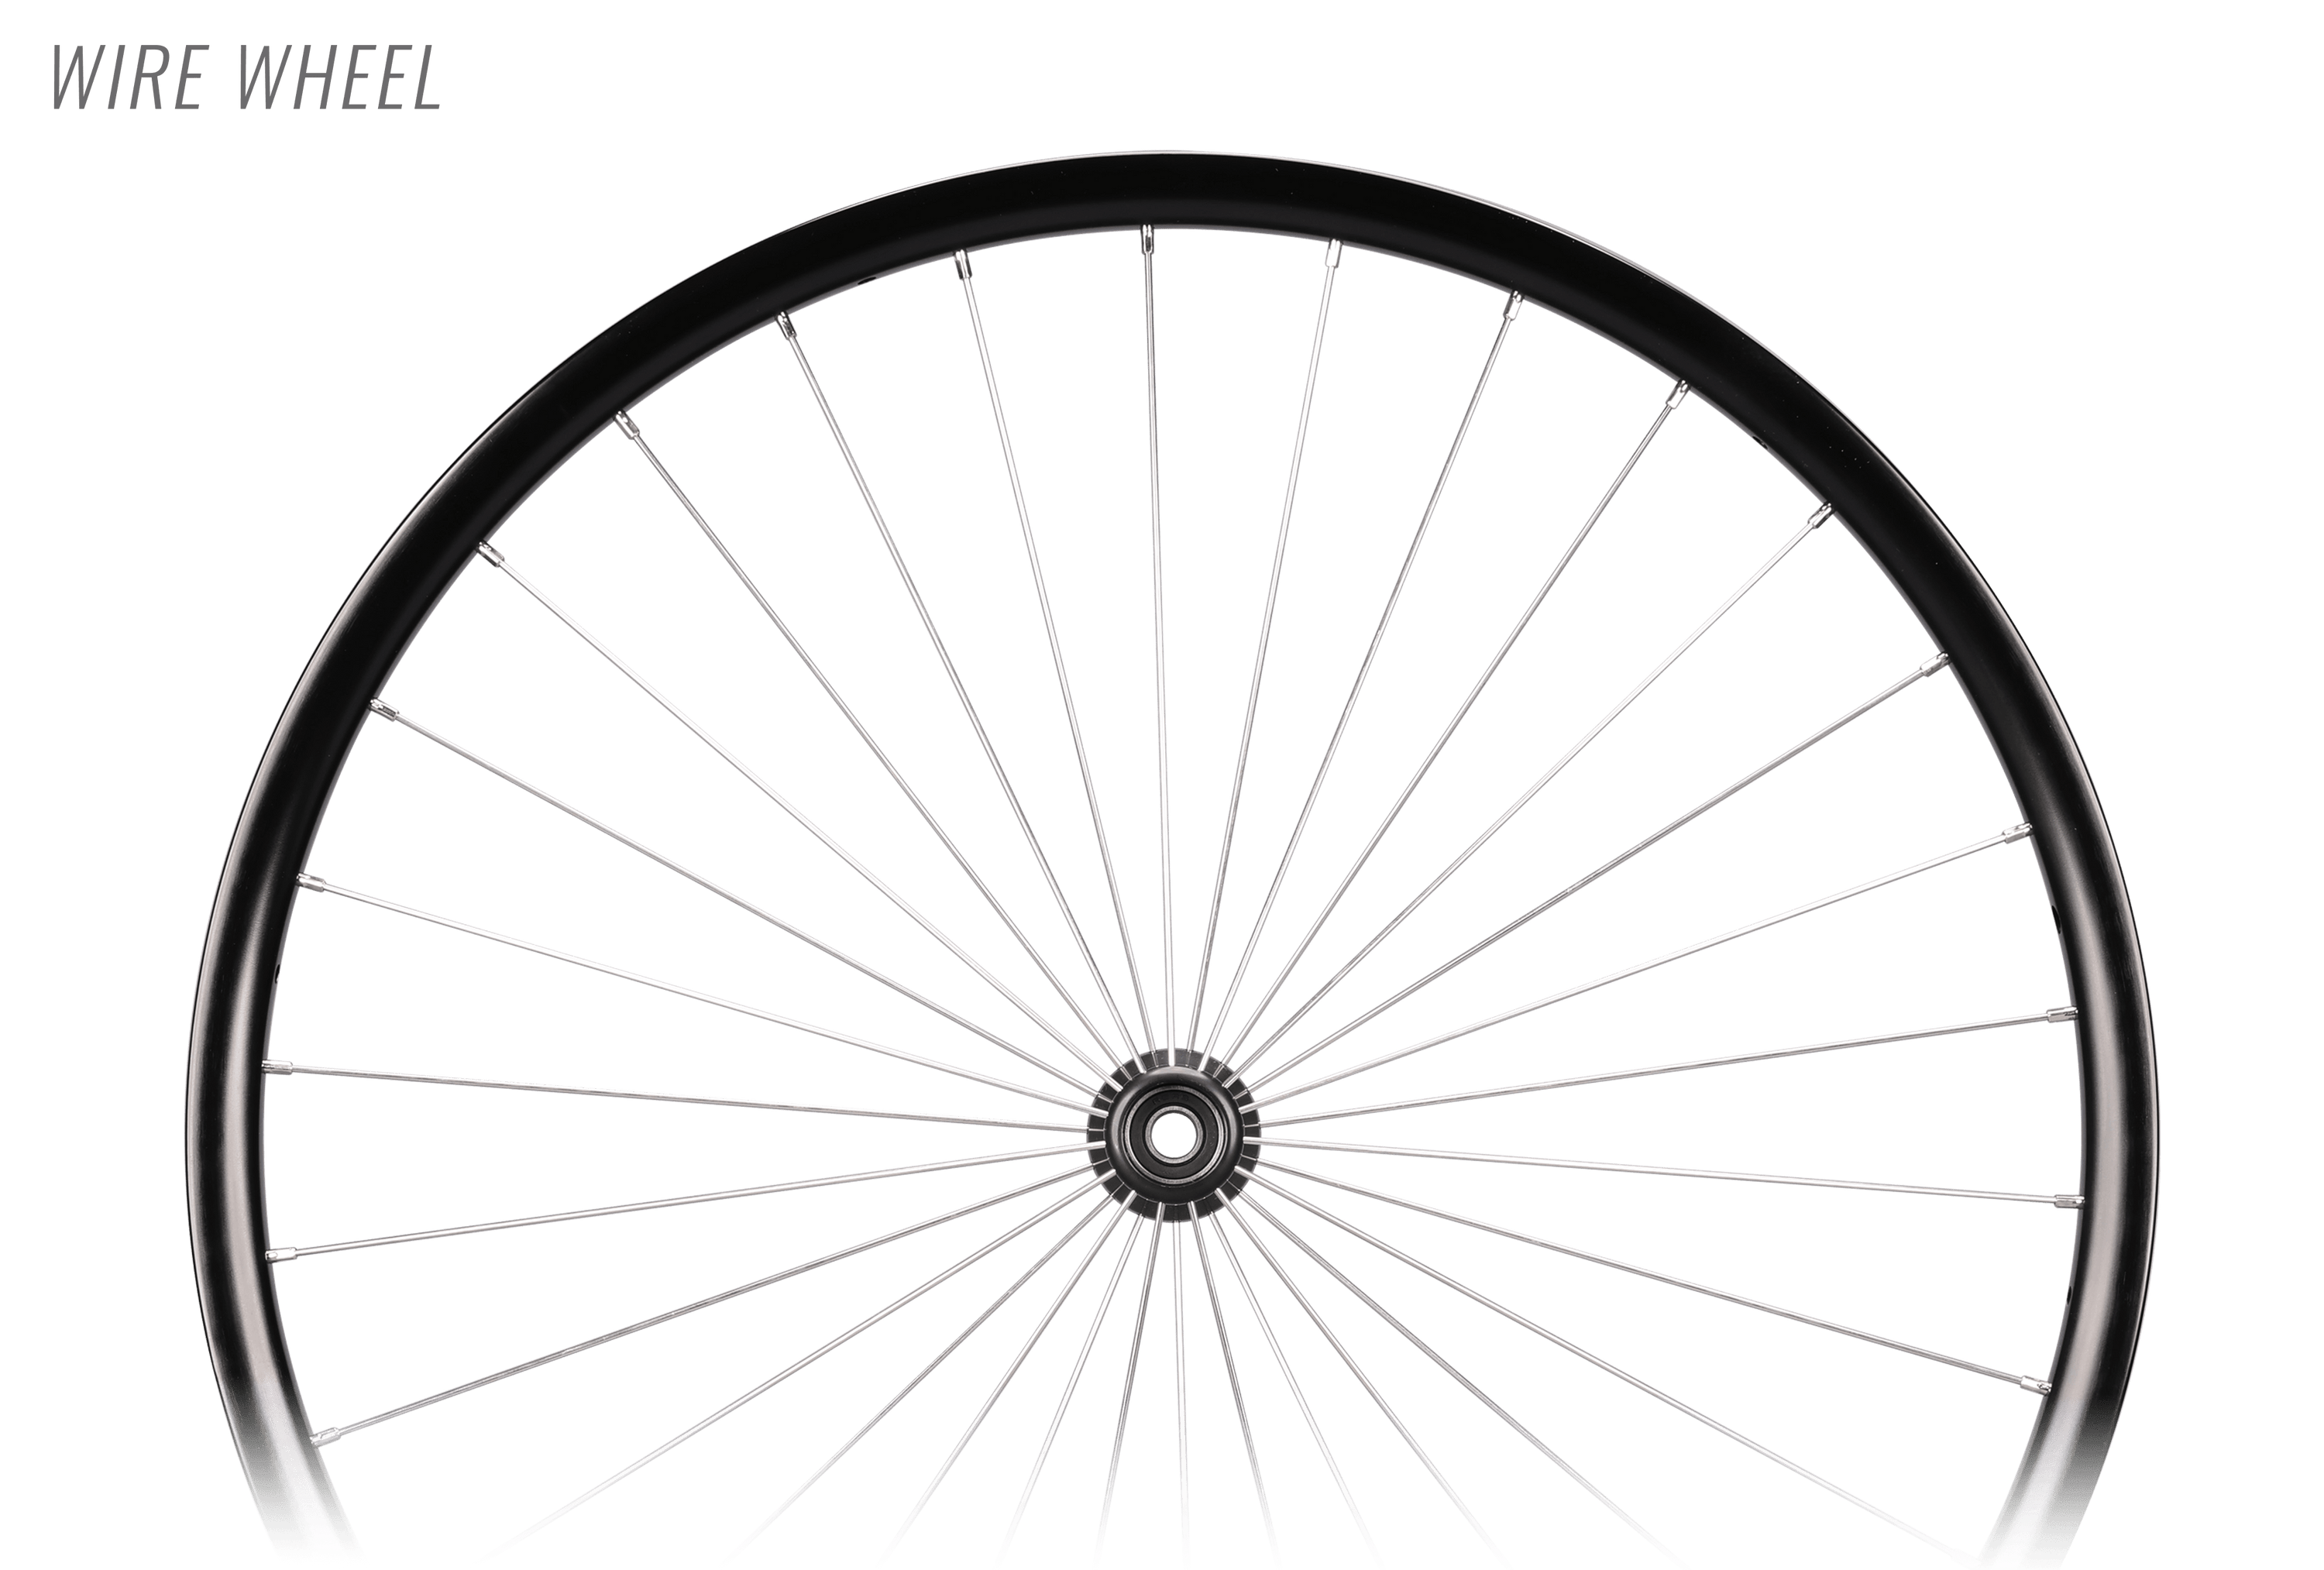 Wire Wheel